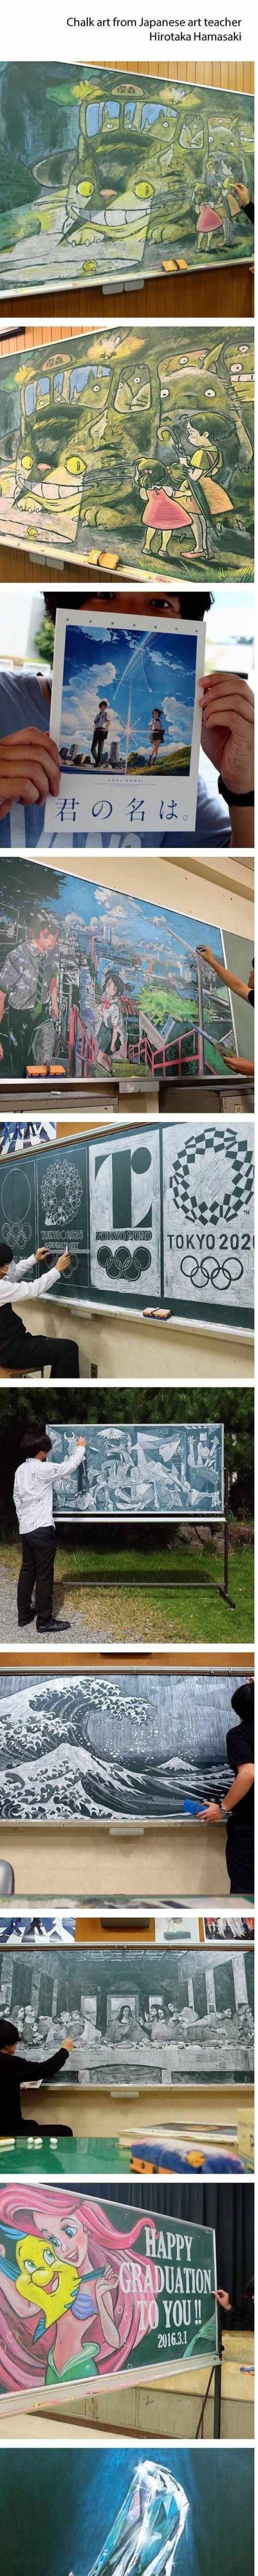 일본 교사의 칠판 그림 솜씨